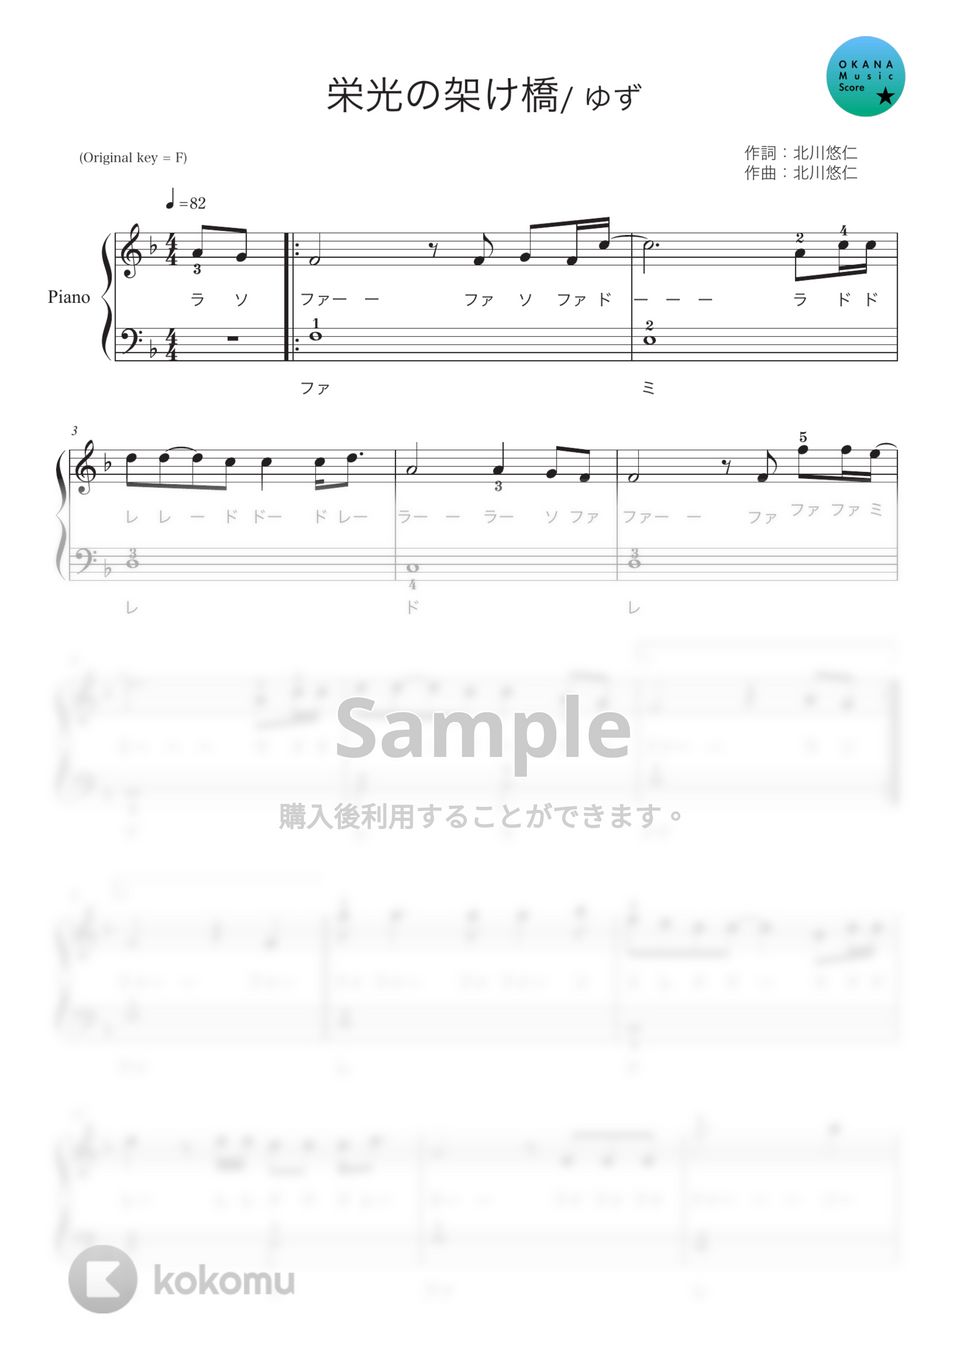 ゆず - 栄光の架け橋 (ピアノ入門/音符ふりがな付) by OKANA